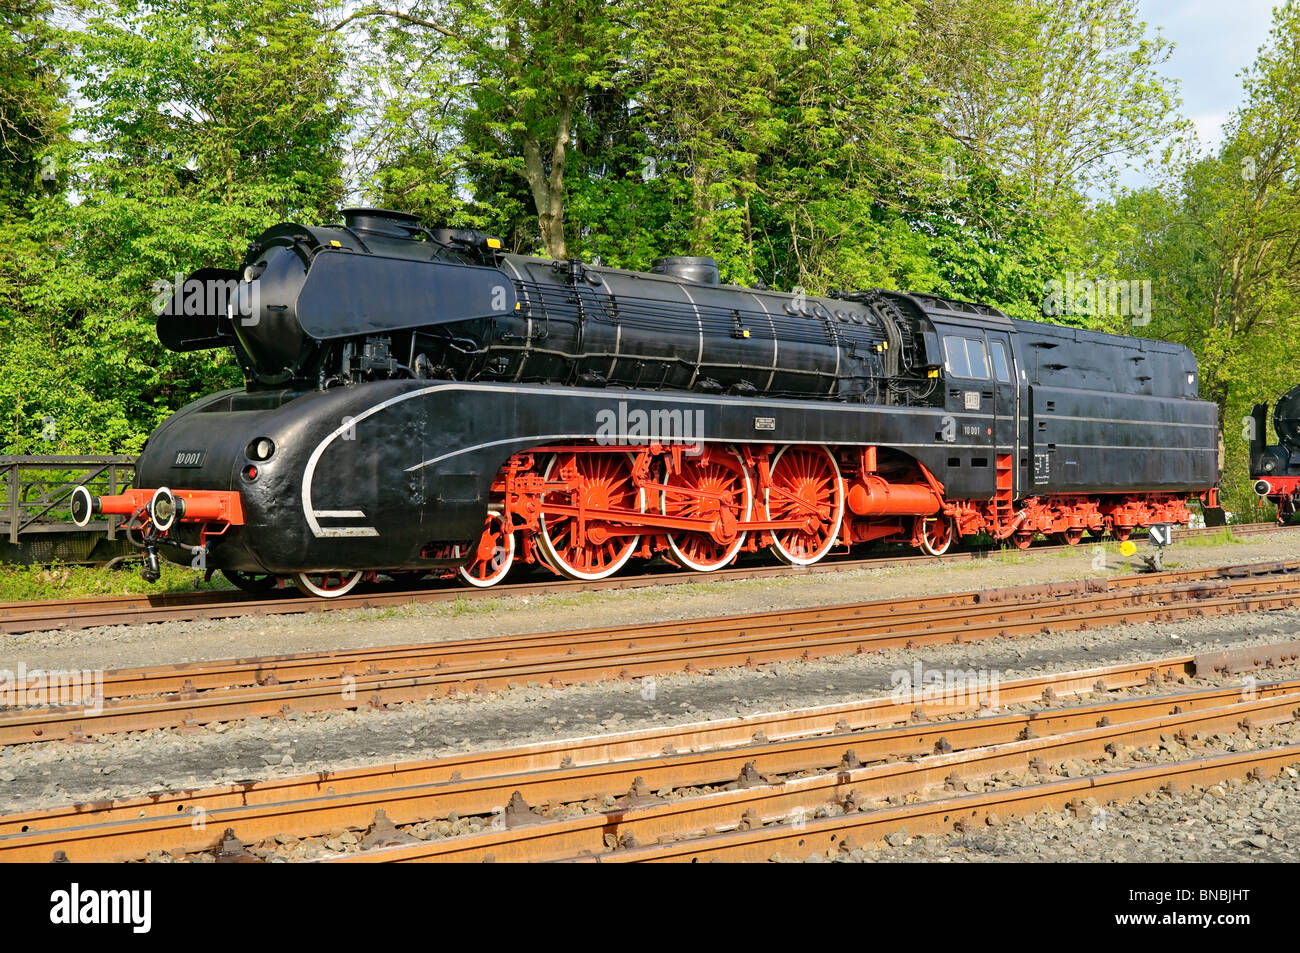 Steam locomotive No. 10 001 at 'German Steam Locomotive Museum', Neuenmarkt, Bavaria, Germany. Stock Photo